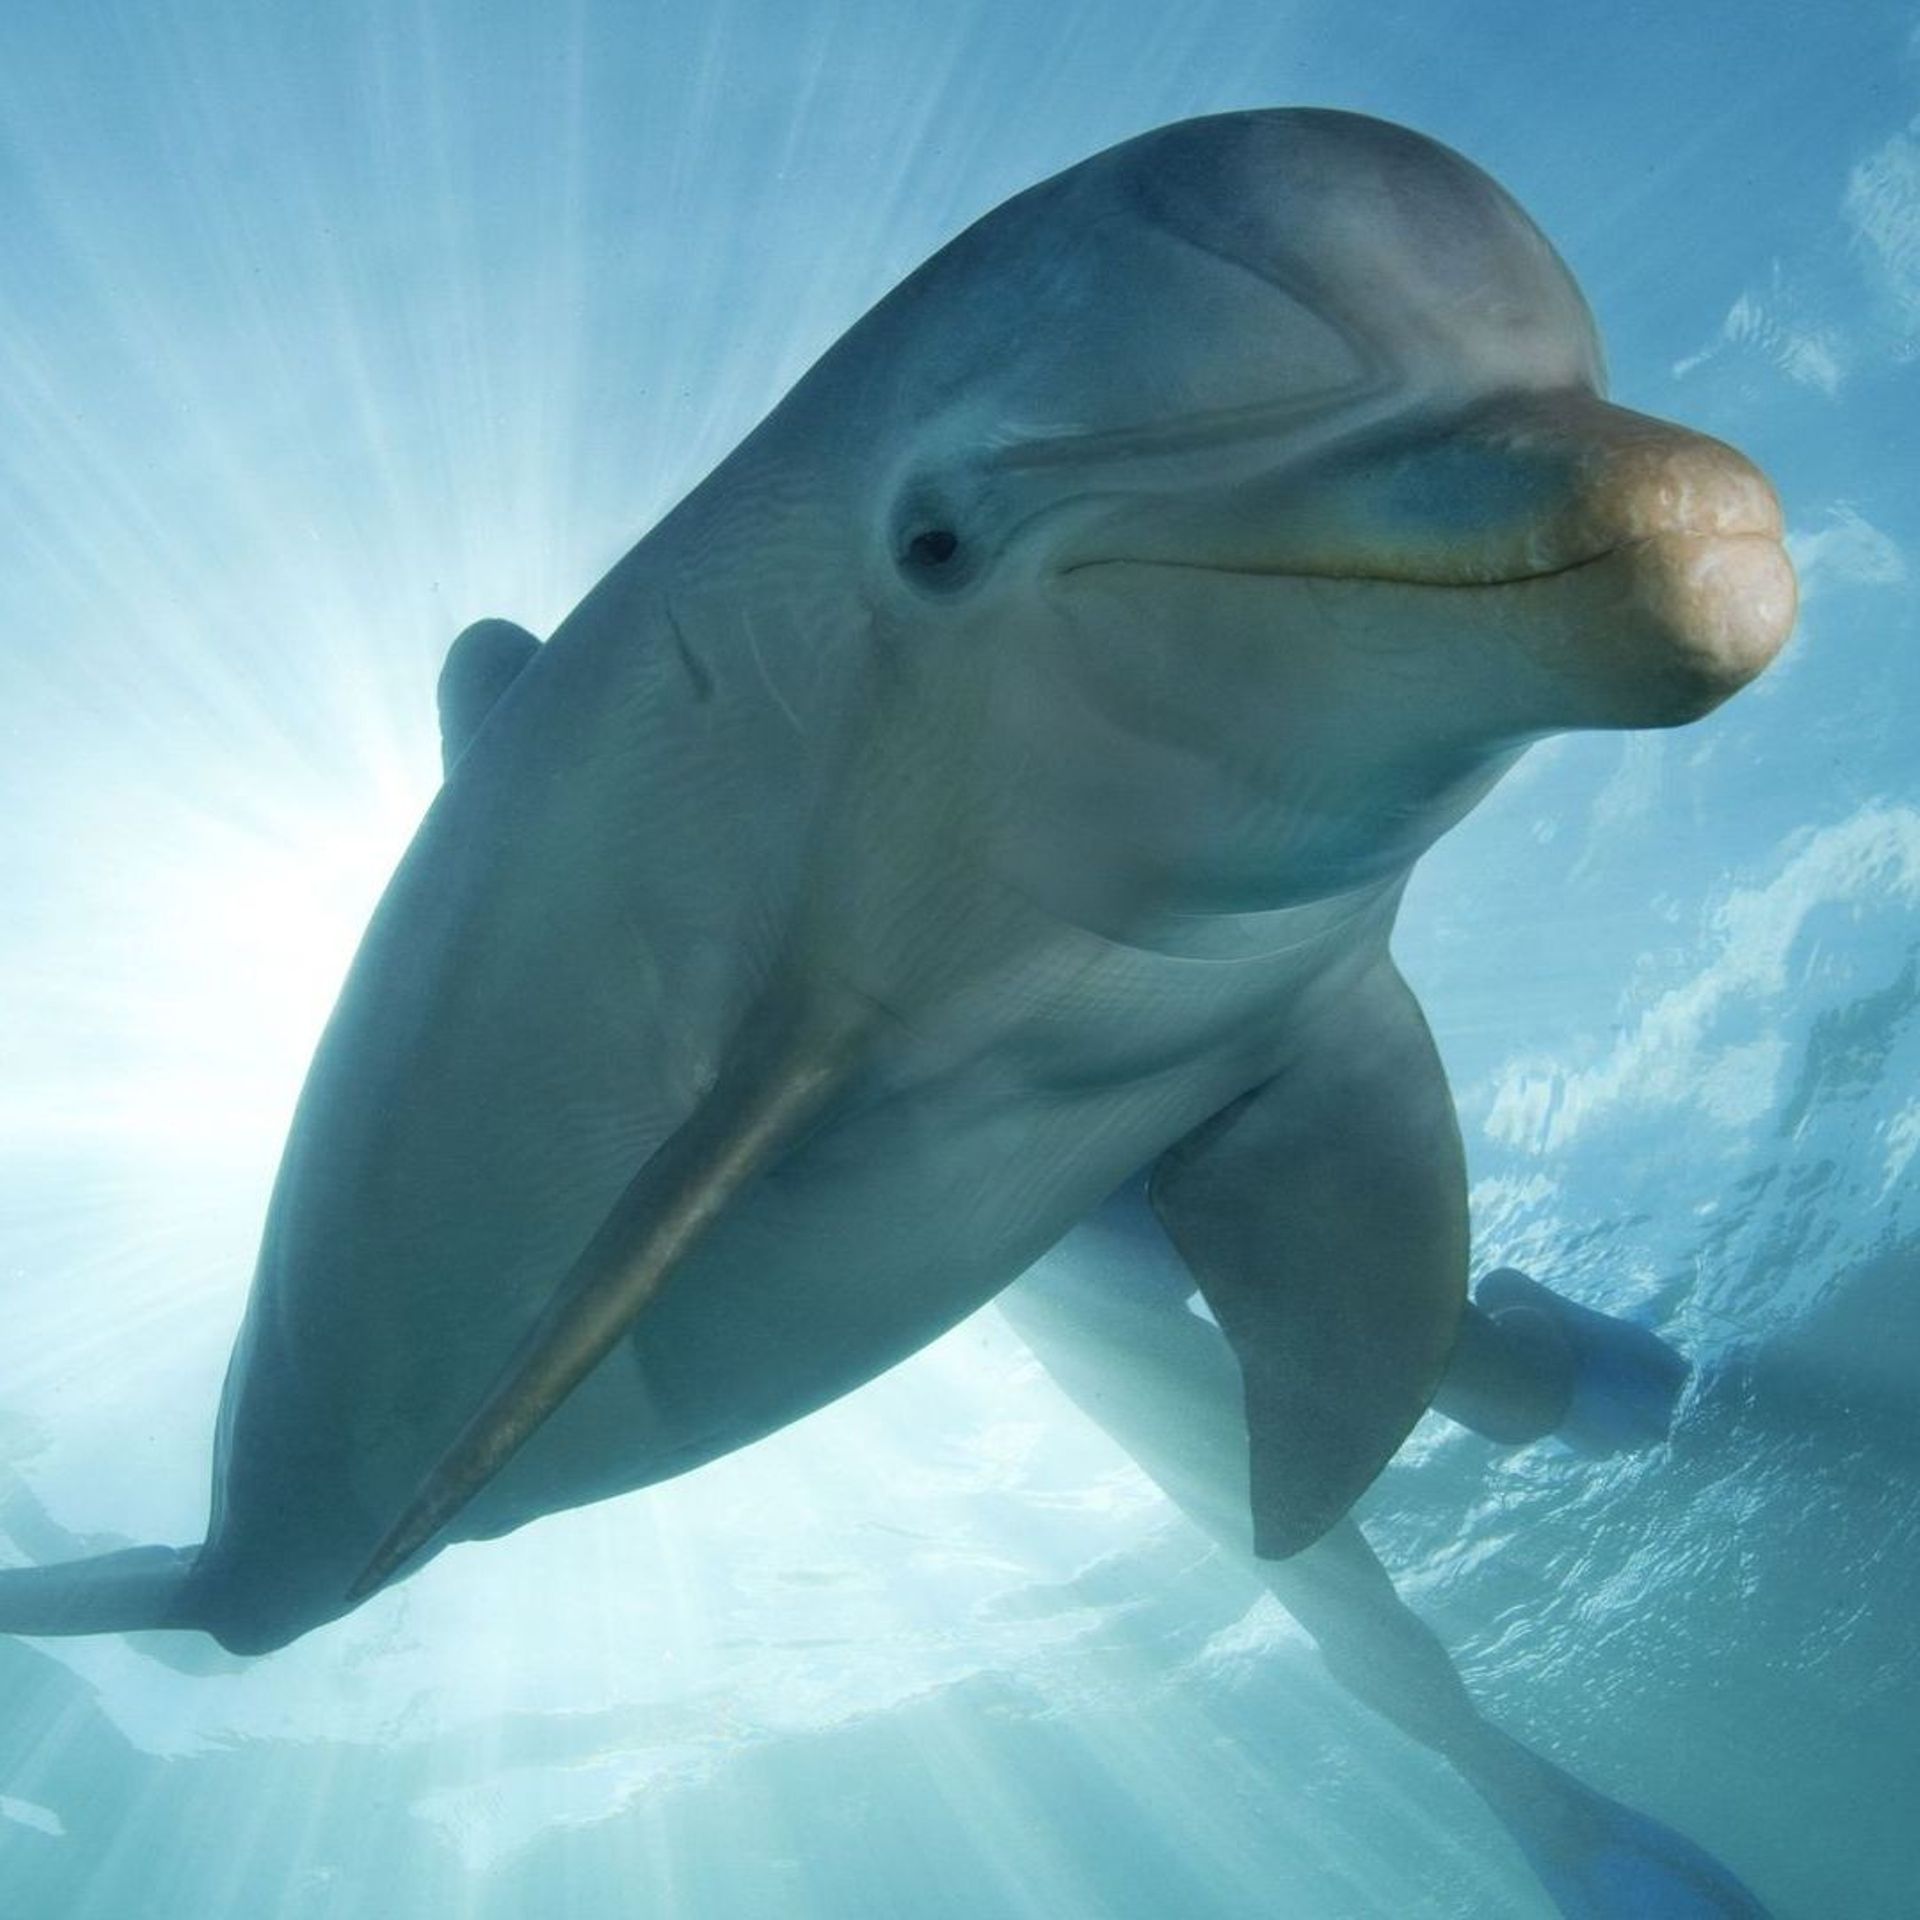 Les dauphins reconnaissent leurs amis grâce au goût de leur urine